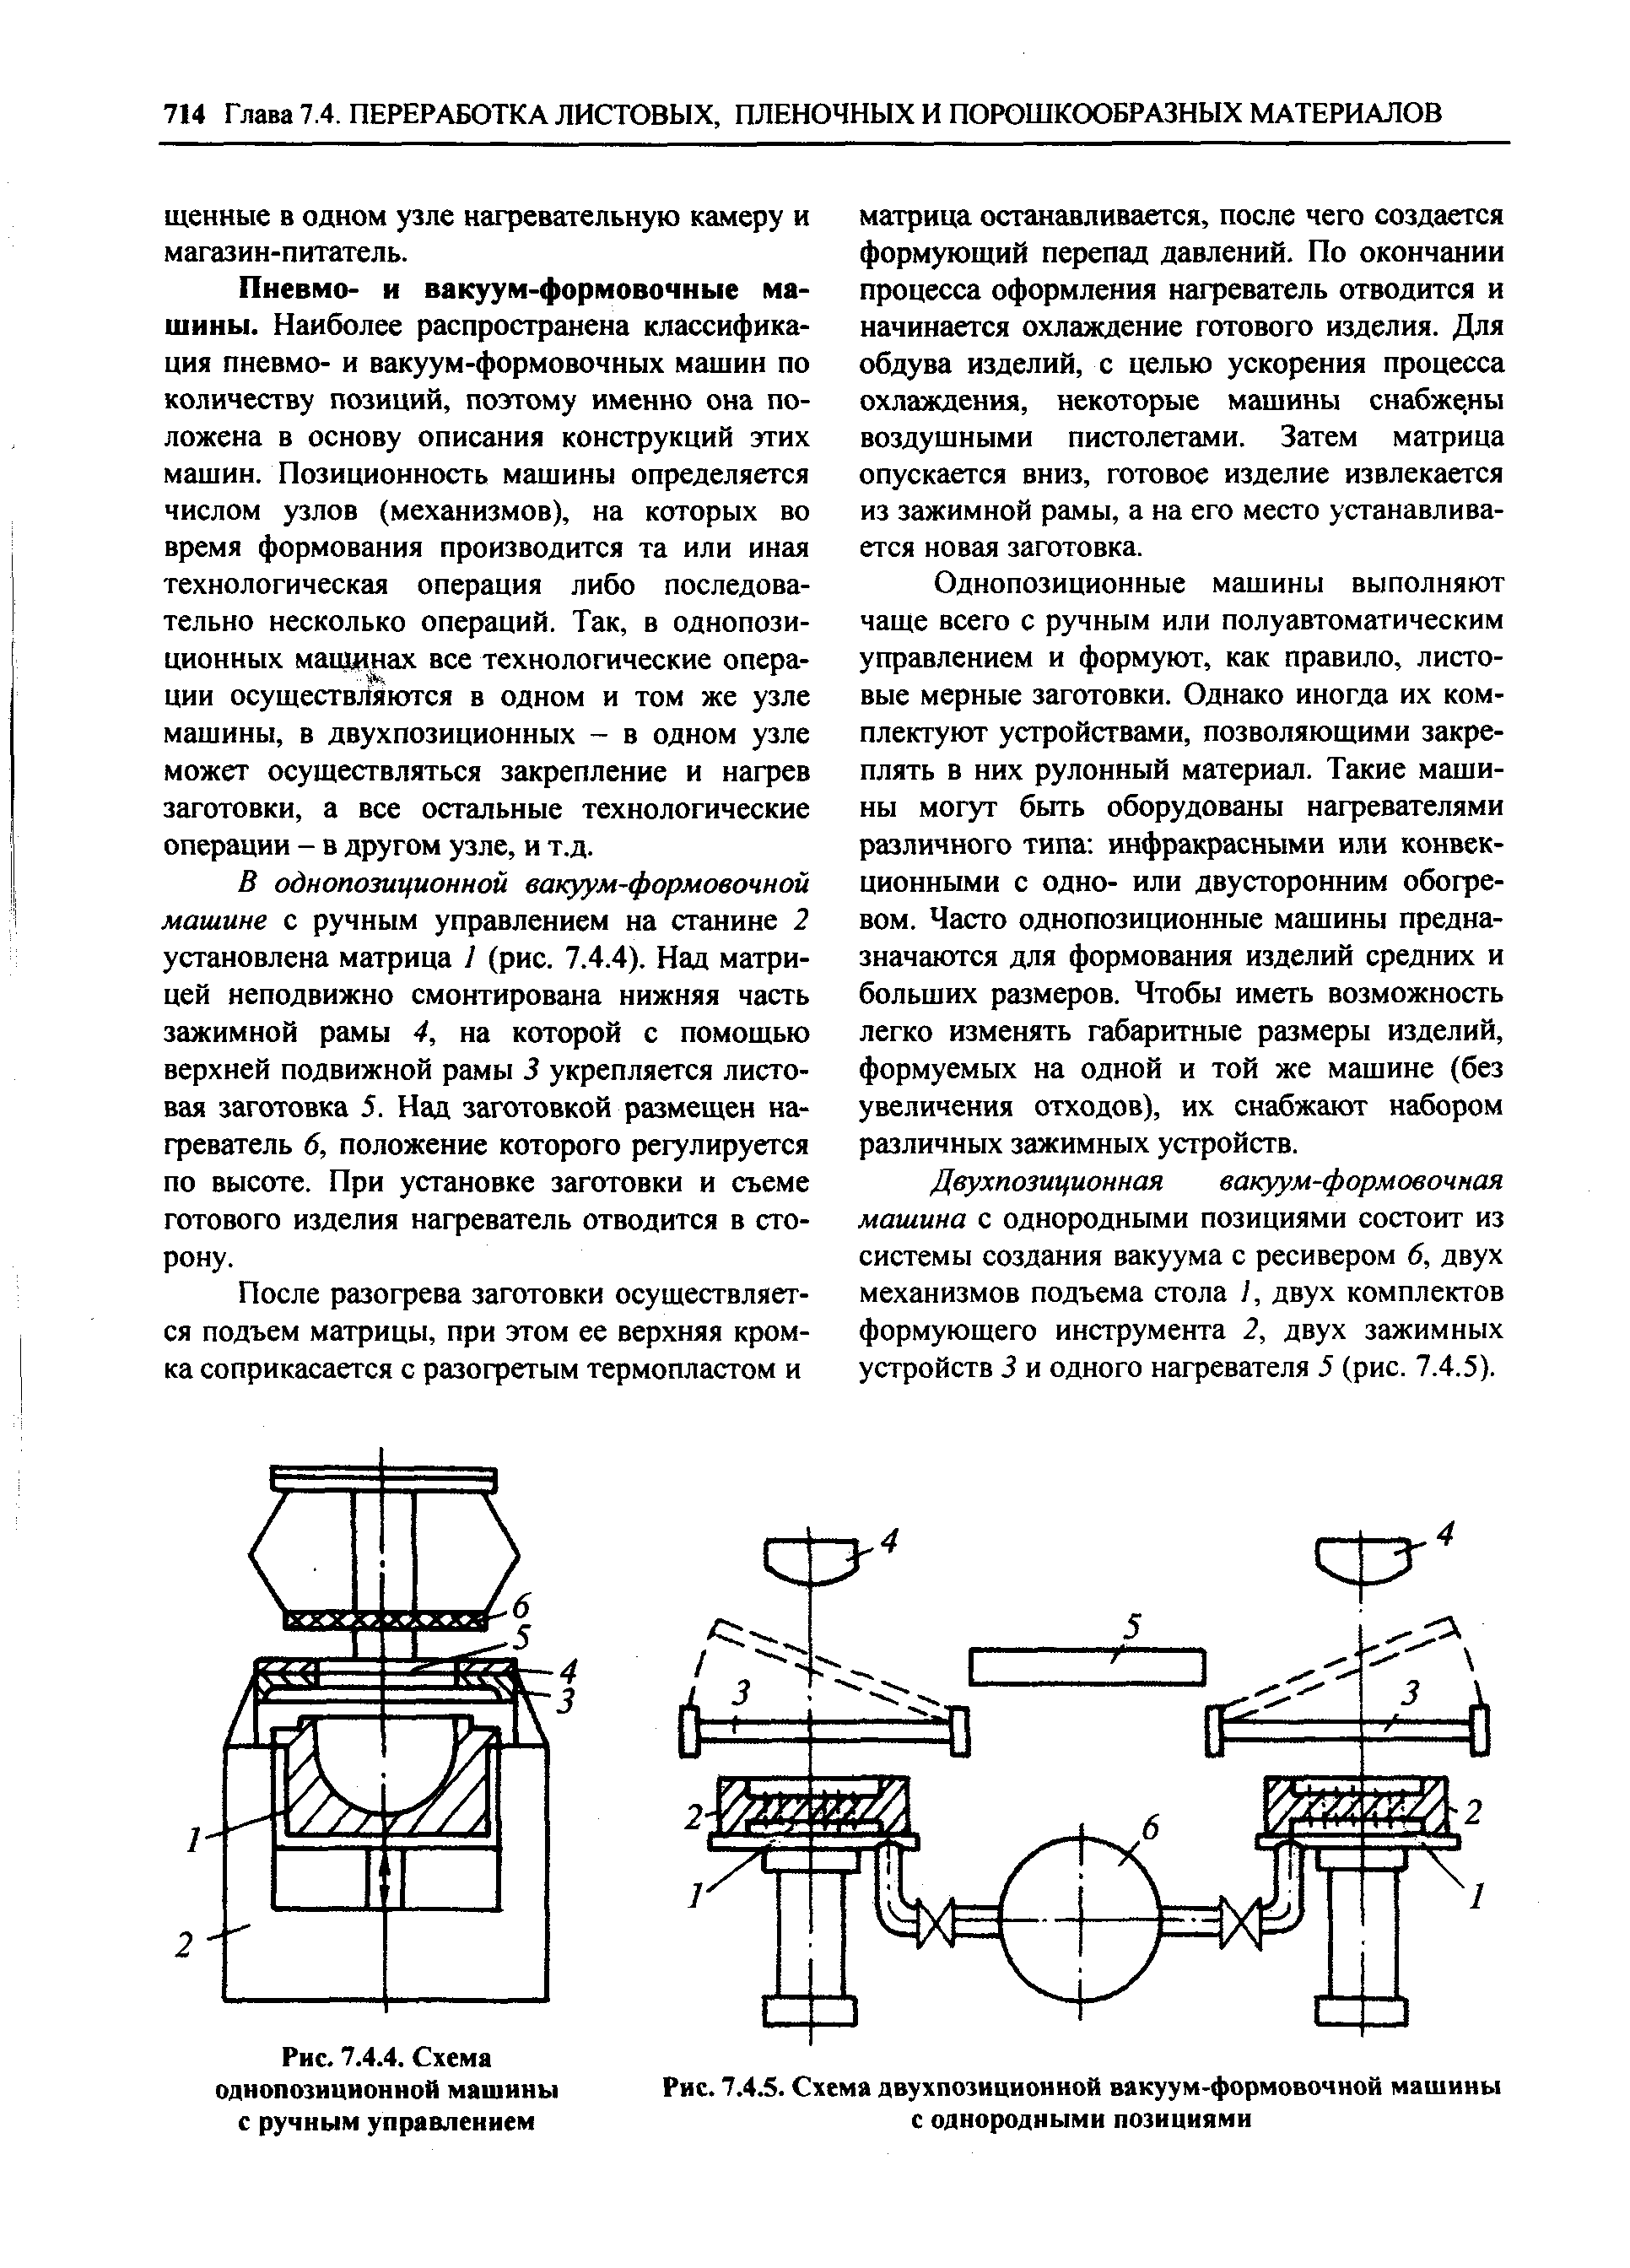 Рис. 7.4.5. Схема двухпозиционной вакуум-формовочной машины с однородными позициями
